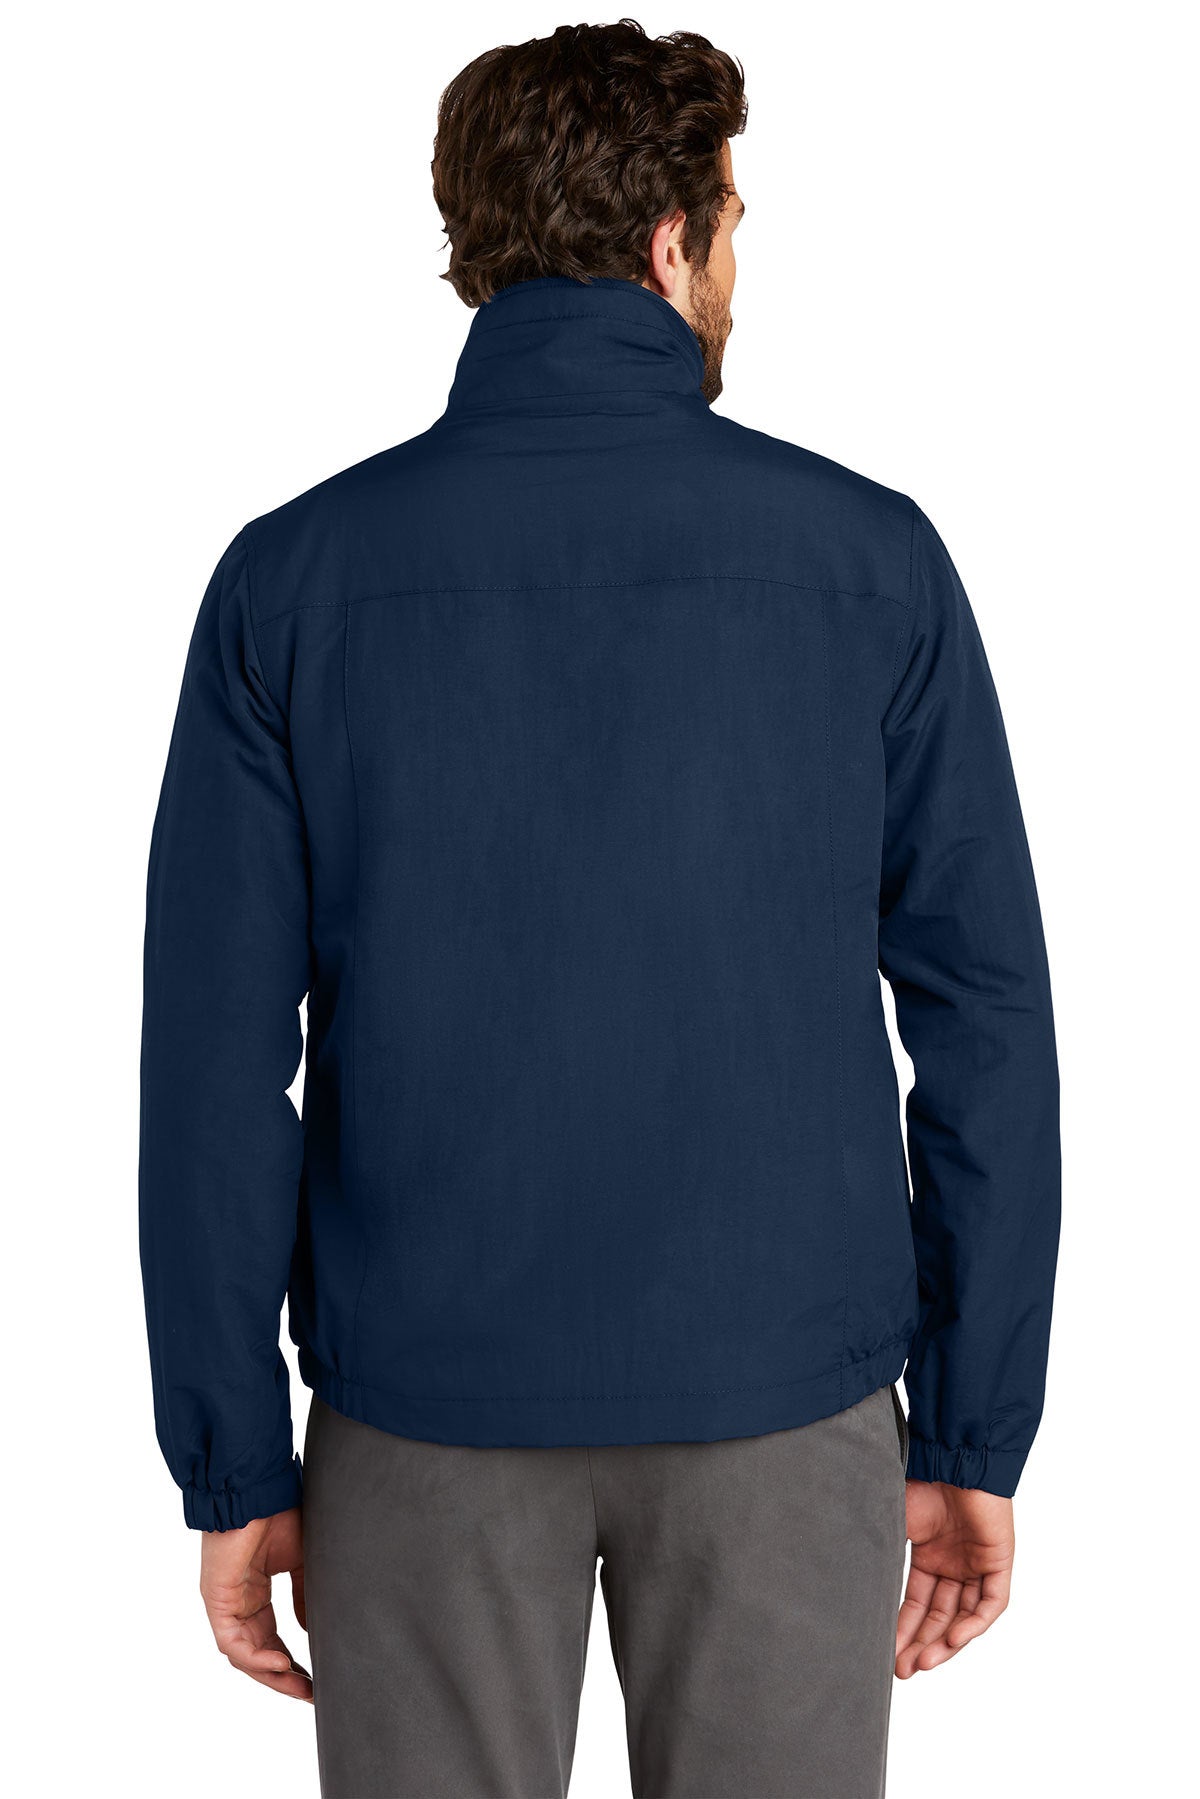 Branded Eddie Bauer Fleece-Lined Jacket EB520 River Blue